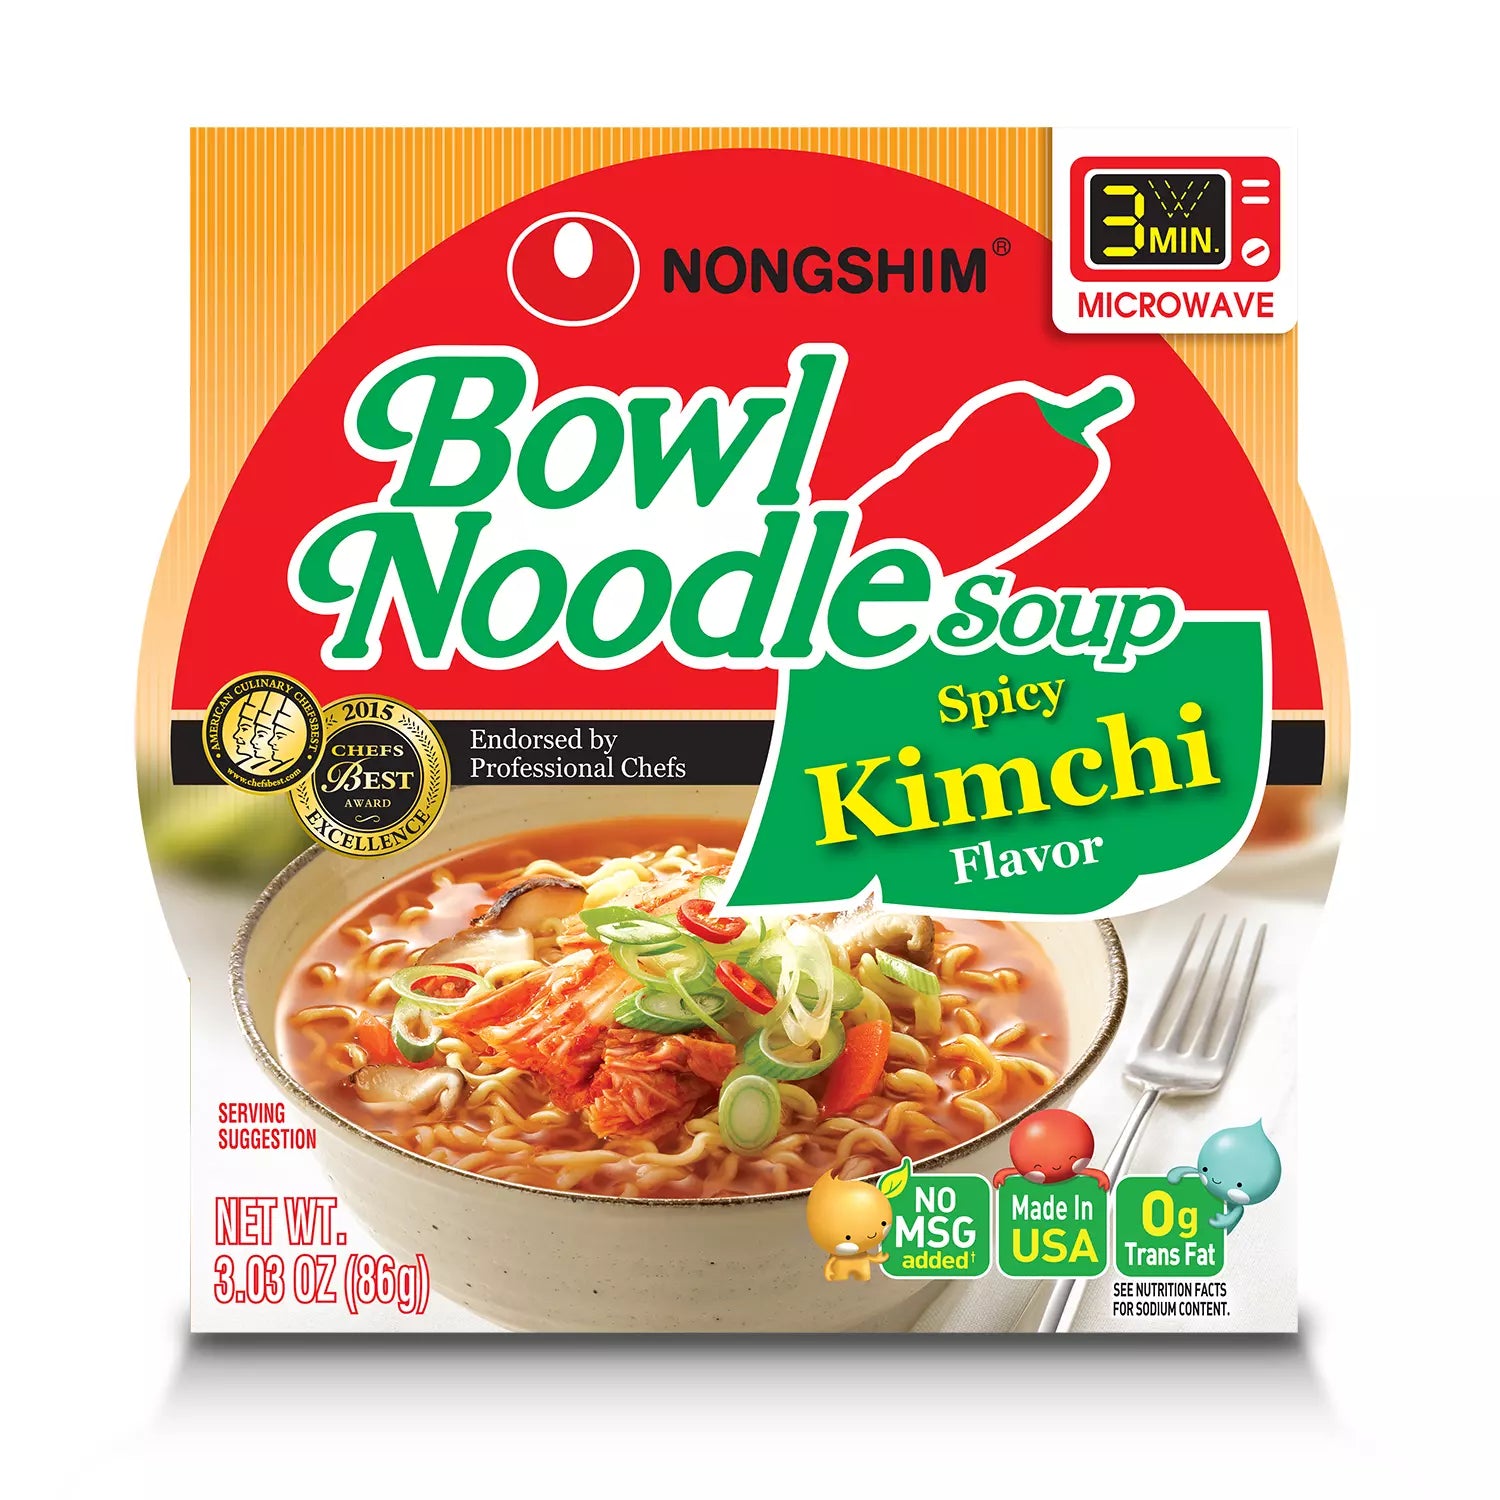 Nongshim Spicy Kimchi Ramen Noodle Soup Bowl (3.03 oz., 18 ct.) - Sam's Club